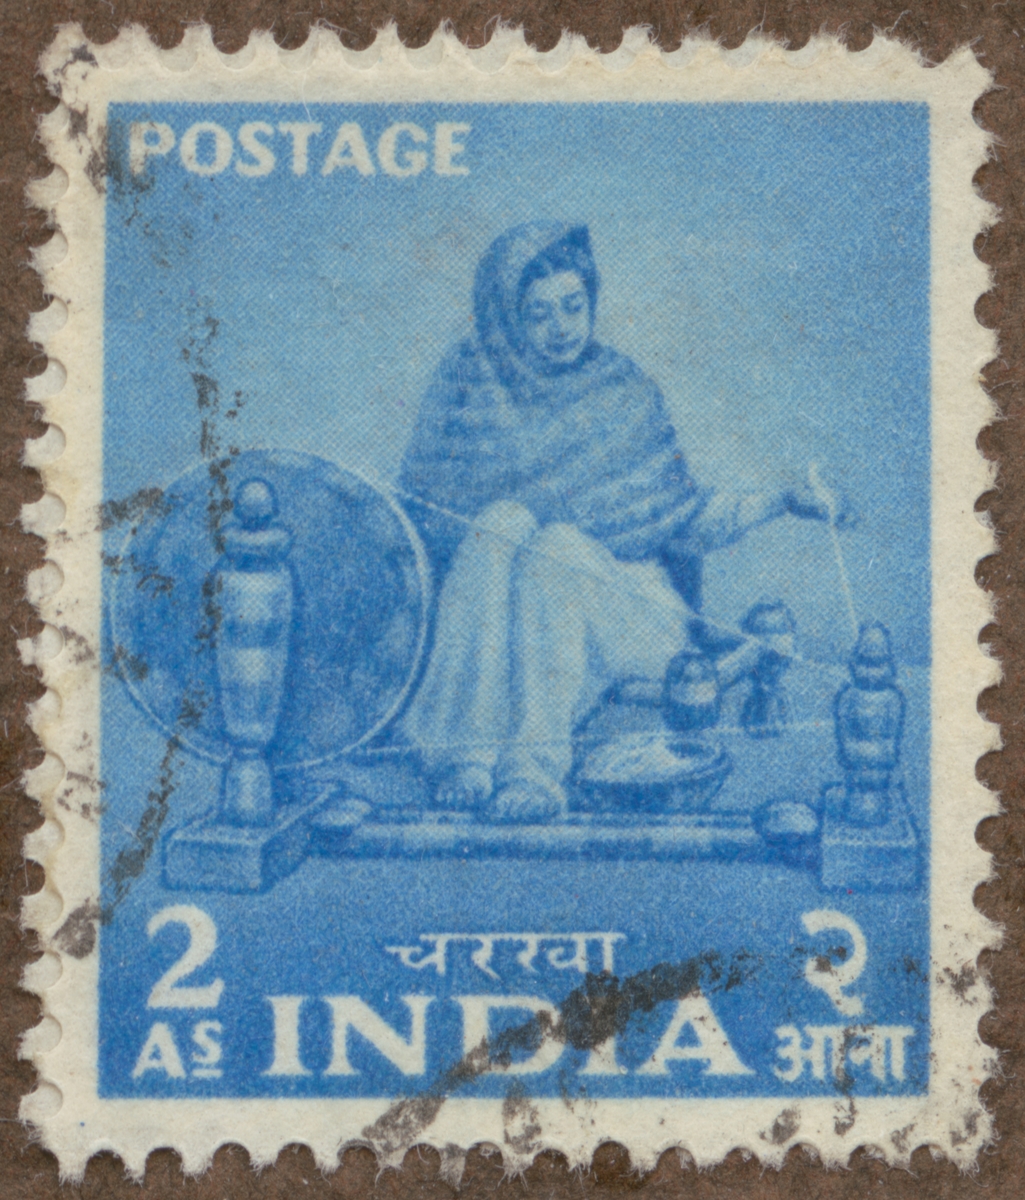 Frimärke ur Gösta Bodmans filatelistiska motivsamling, påbörjad 1950.
Frimärke från Indien, 1955. Motiv av "Naga" kvinna, spinnande för hand med slända.